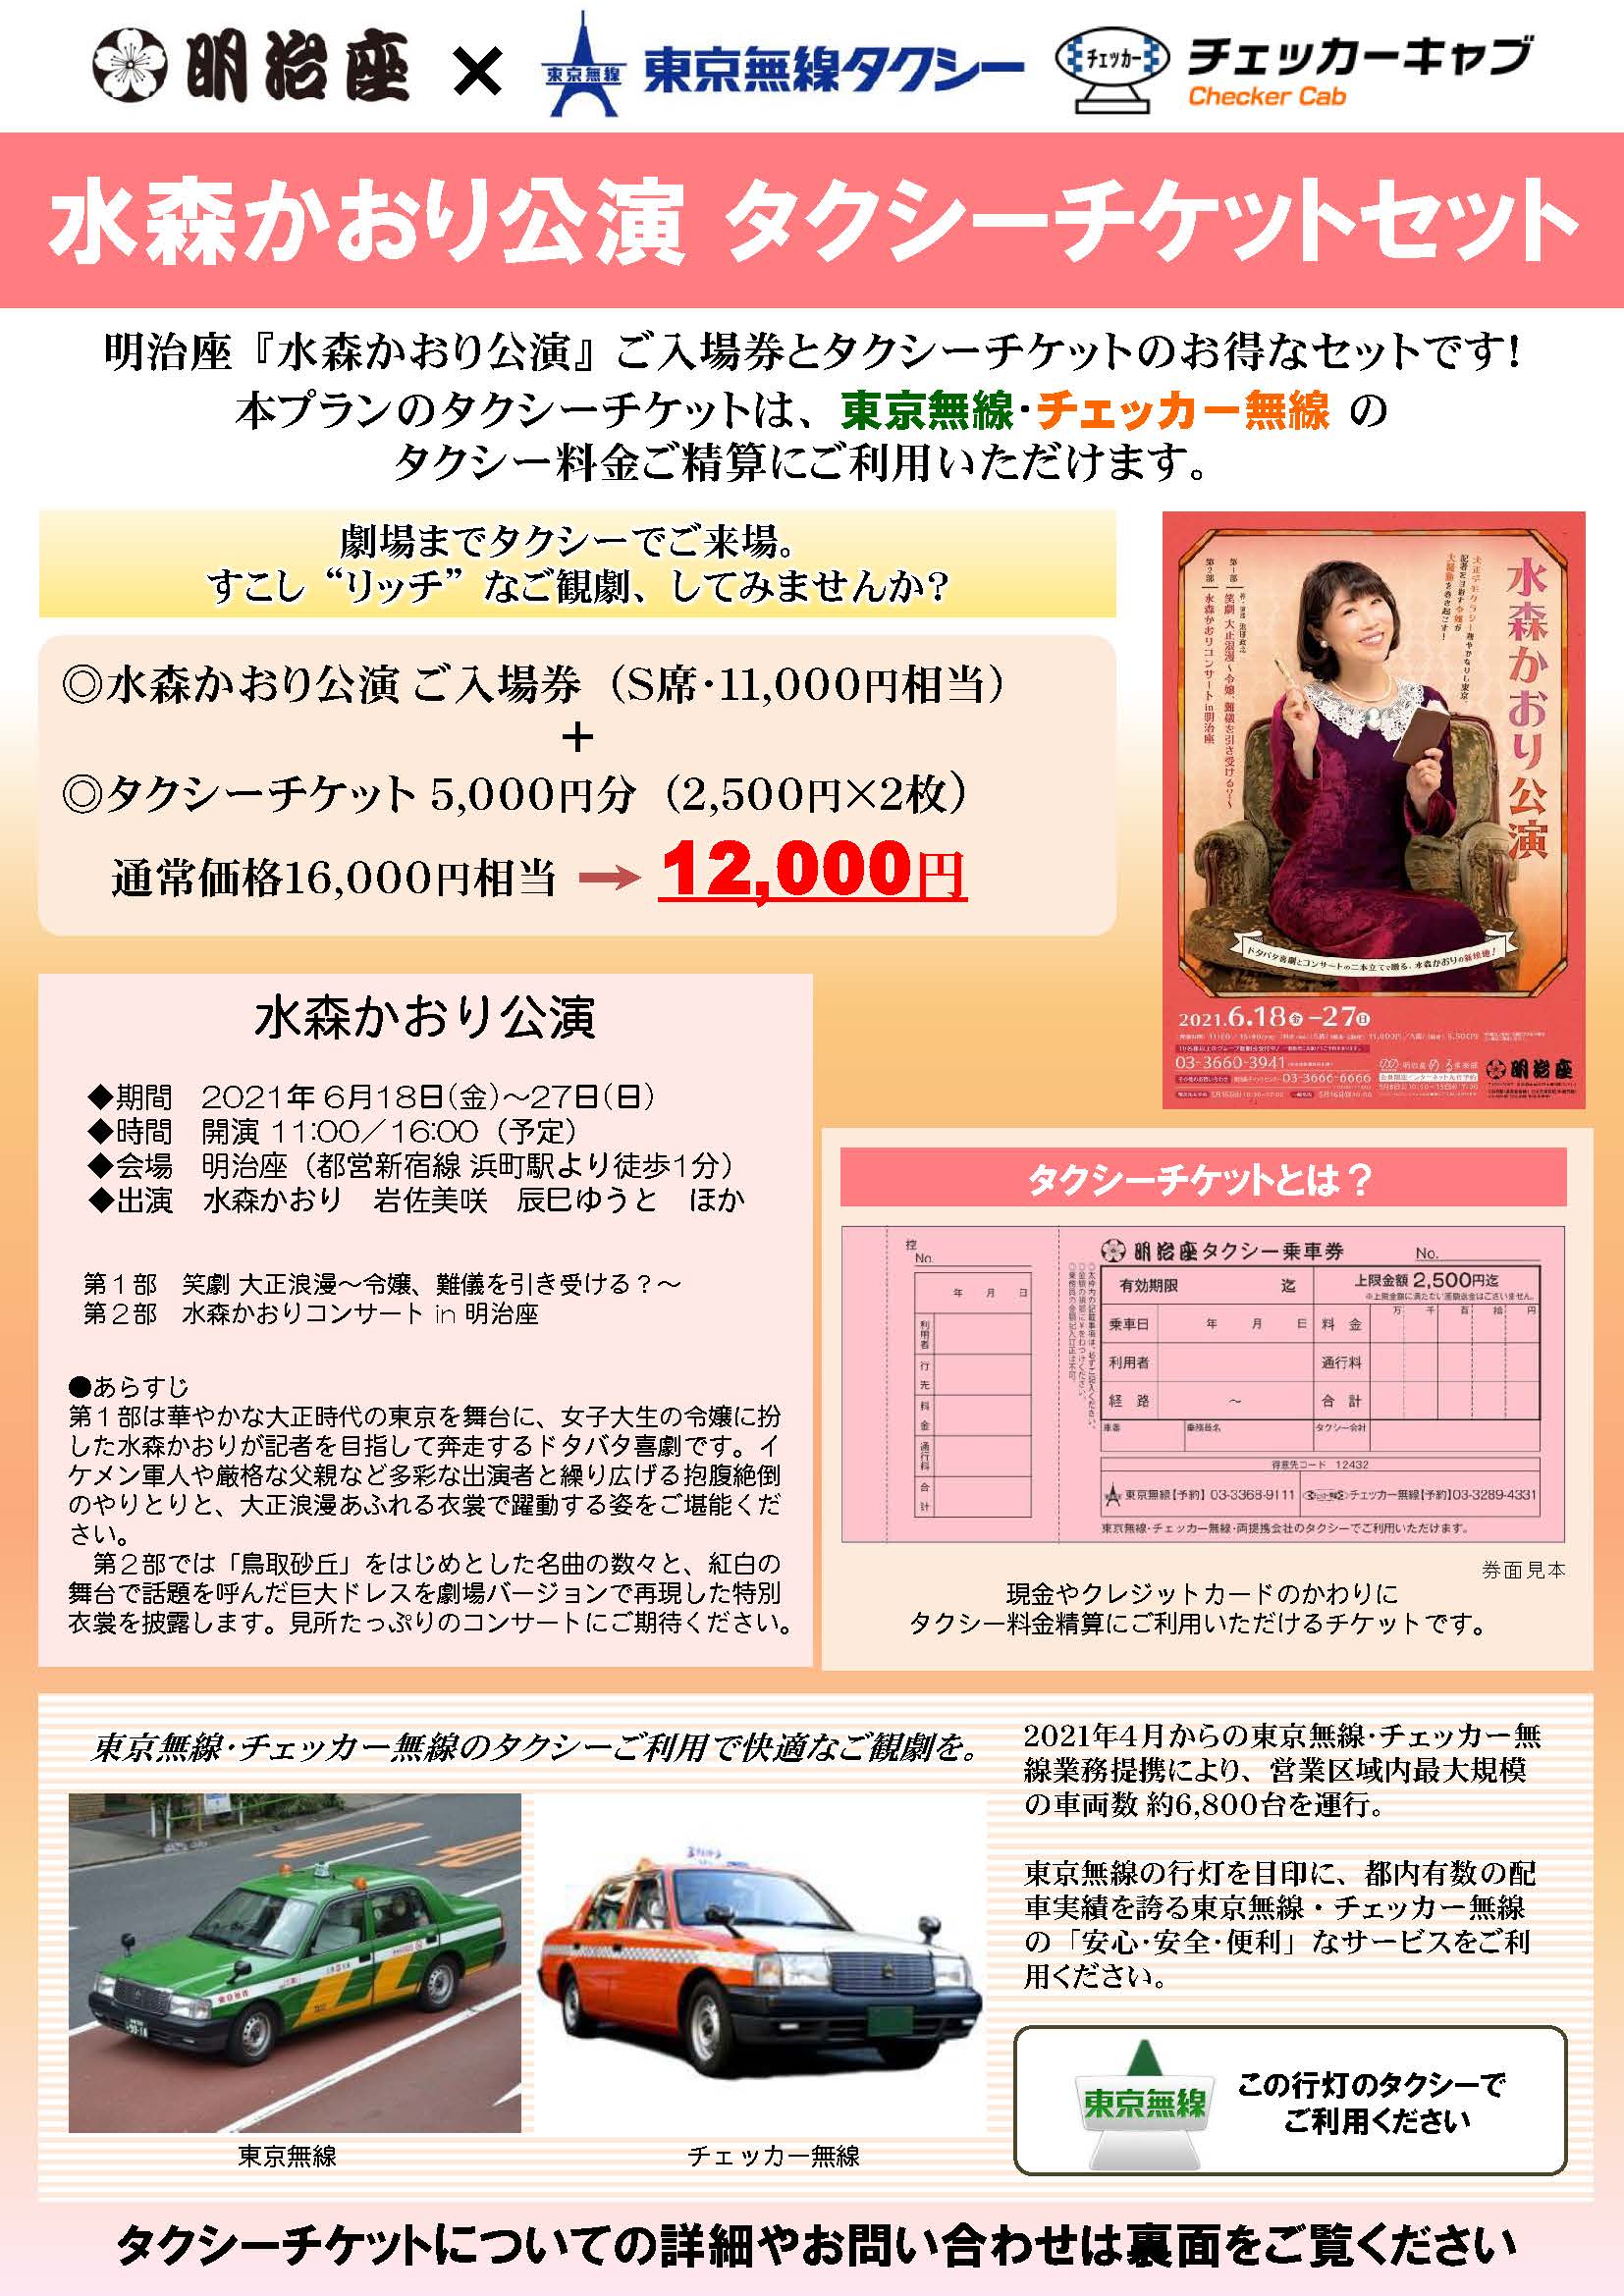 観光バス・ハイヤー手配 バリアフリー旅行の東京ナイストラベルの水森公演タクシーチケットプラン